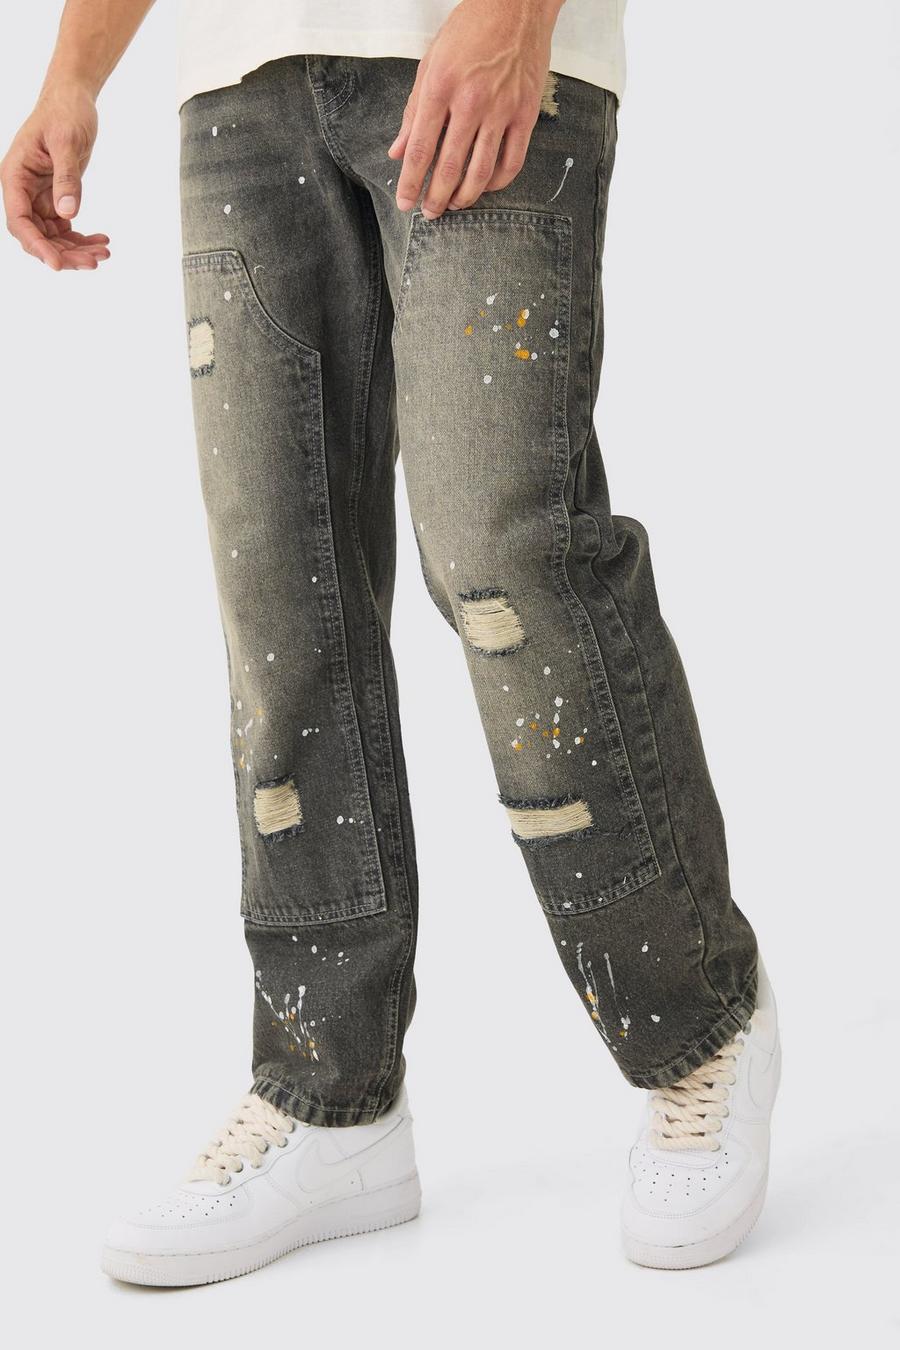 Lockere Jeans mit Farbspritzern in Antik-Grau, Grey